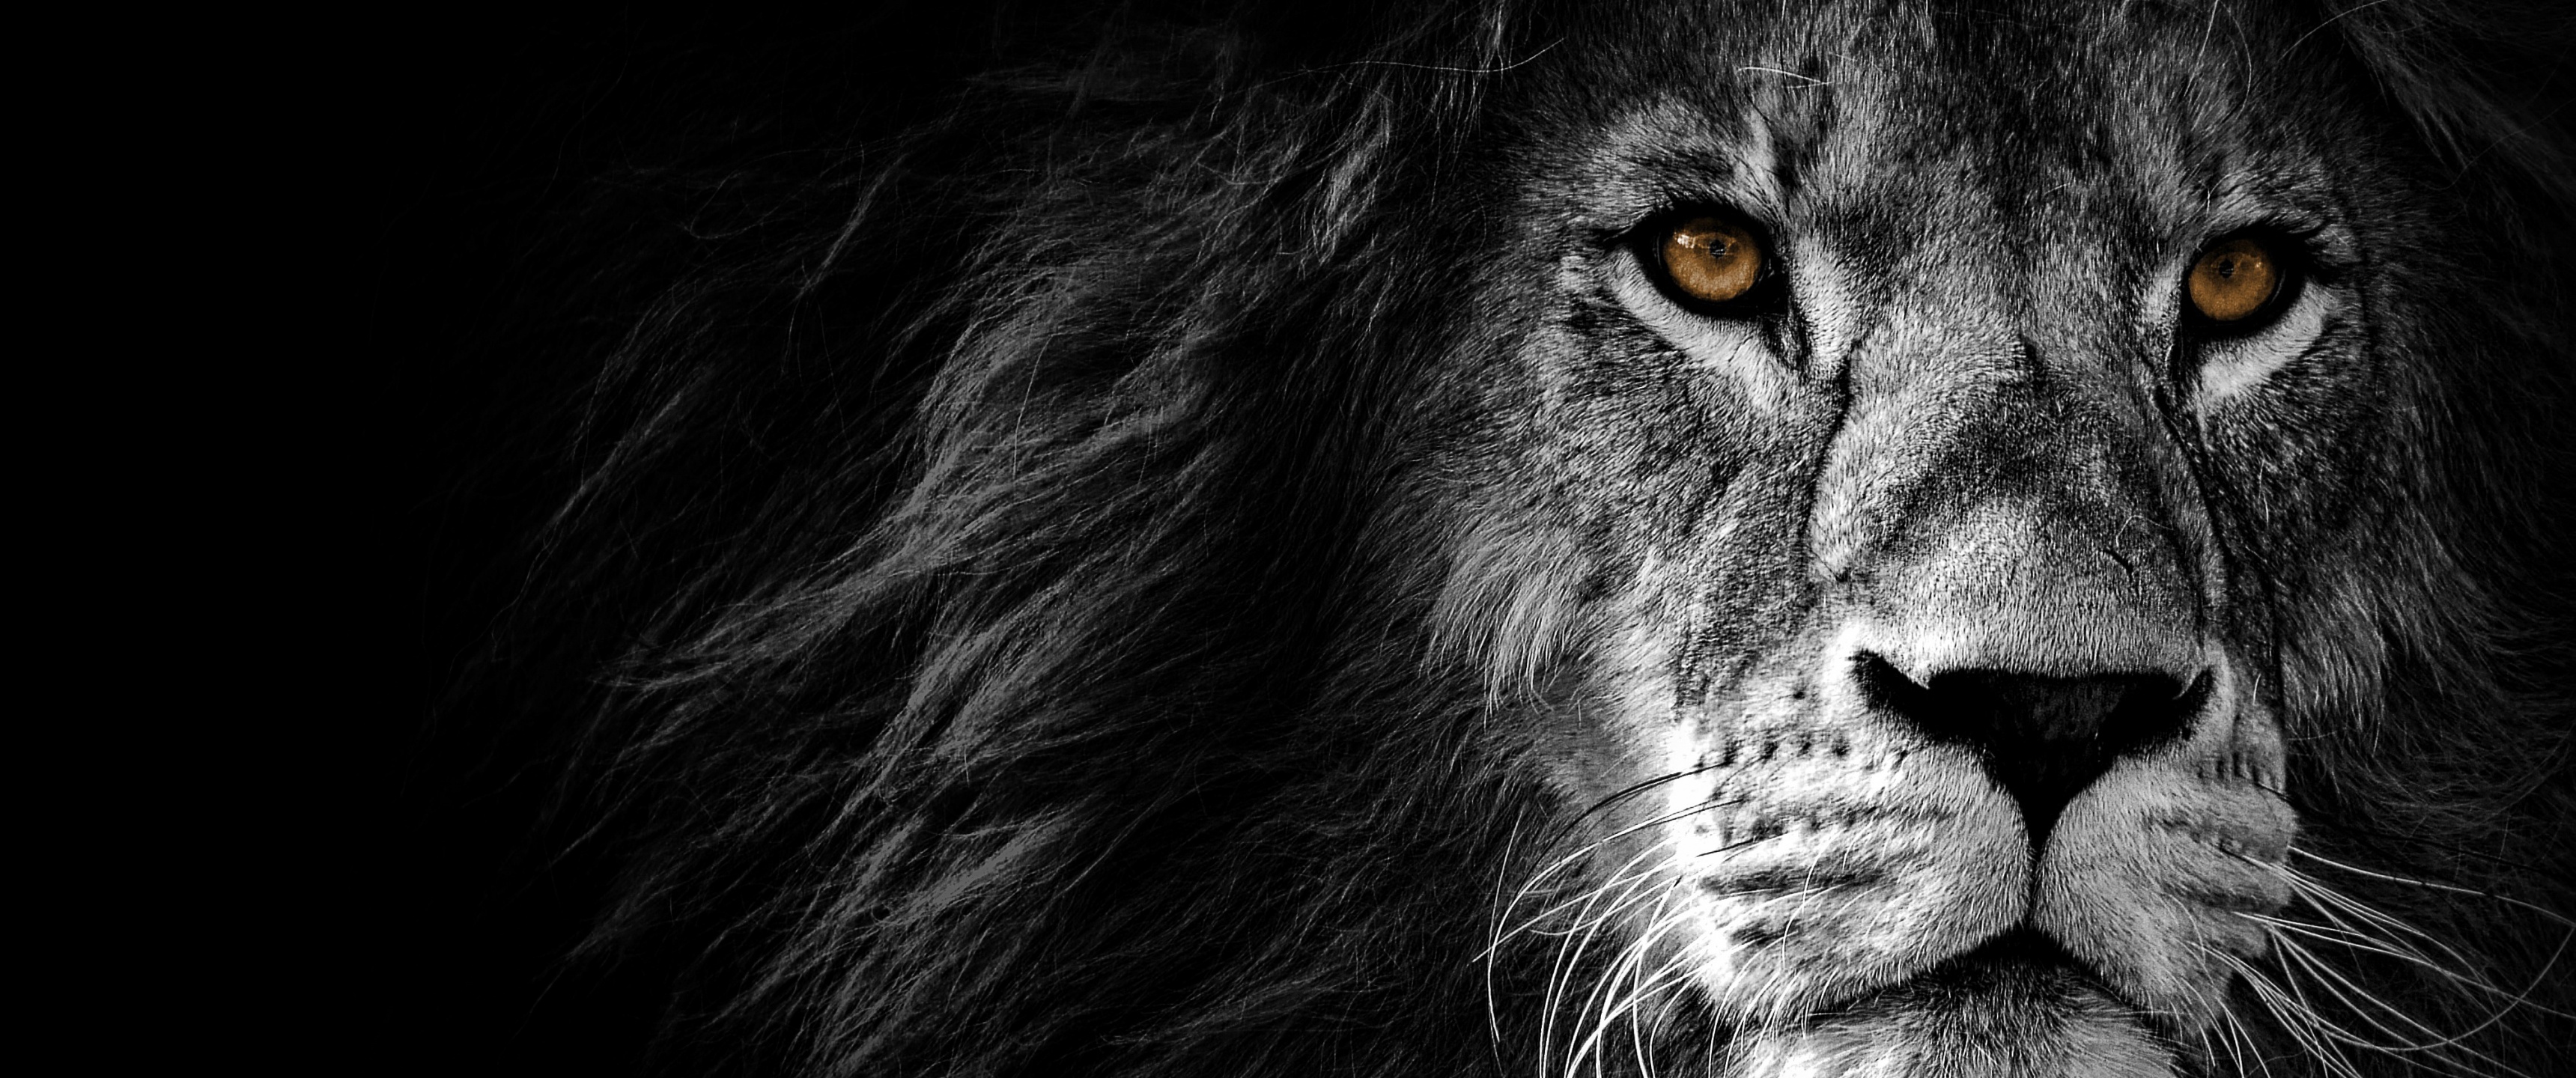 Hình nền sư tử 4K hoang dã và sống động sẽ cho bạn cảm giác như thực sự đang nằm chờ đợi lúc tiến hành săn mồi. Với chủ đề châu Phi độc đáo, hình nền này thực sự là một lựa chọn hoàn hảo cho những người yêu thích động vật hoang dã và muốn trải nghiệm với một hình ảnh ấn tượng.